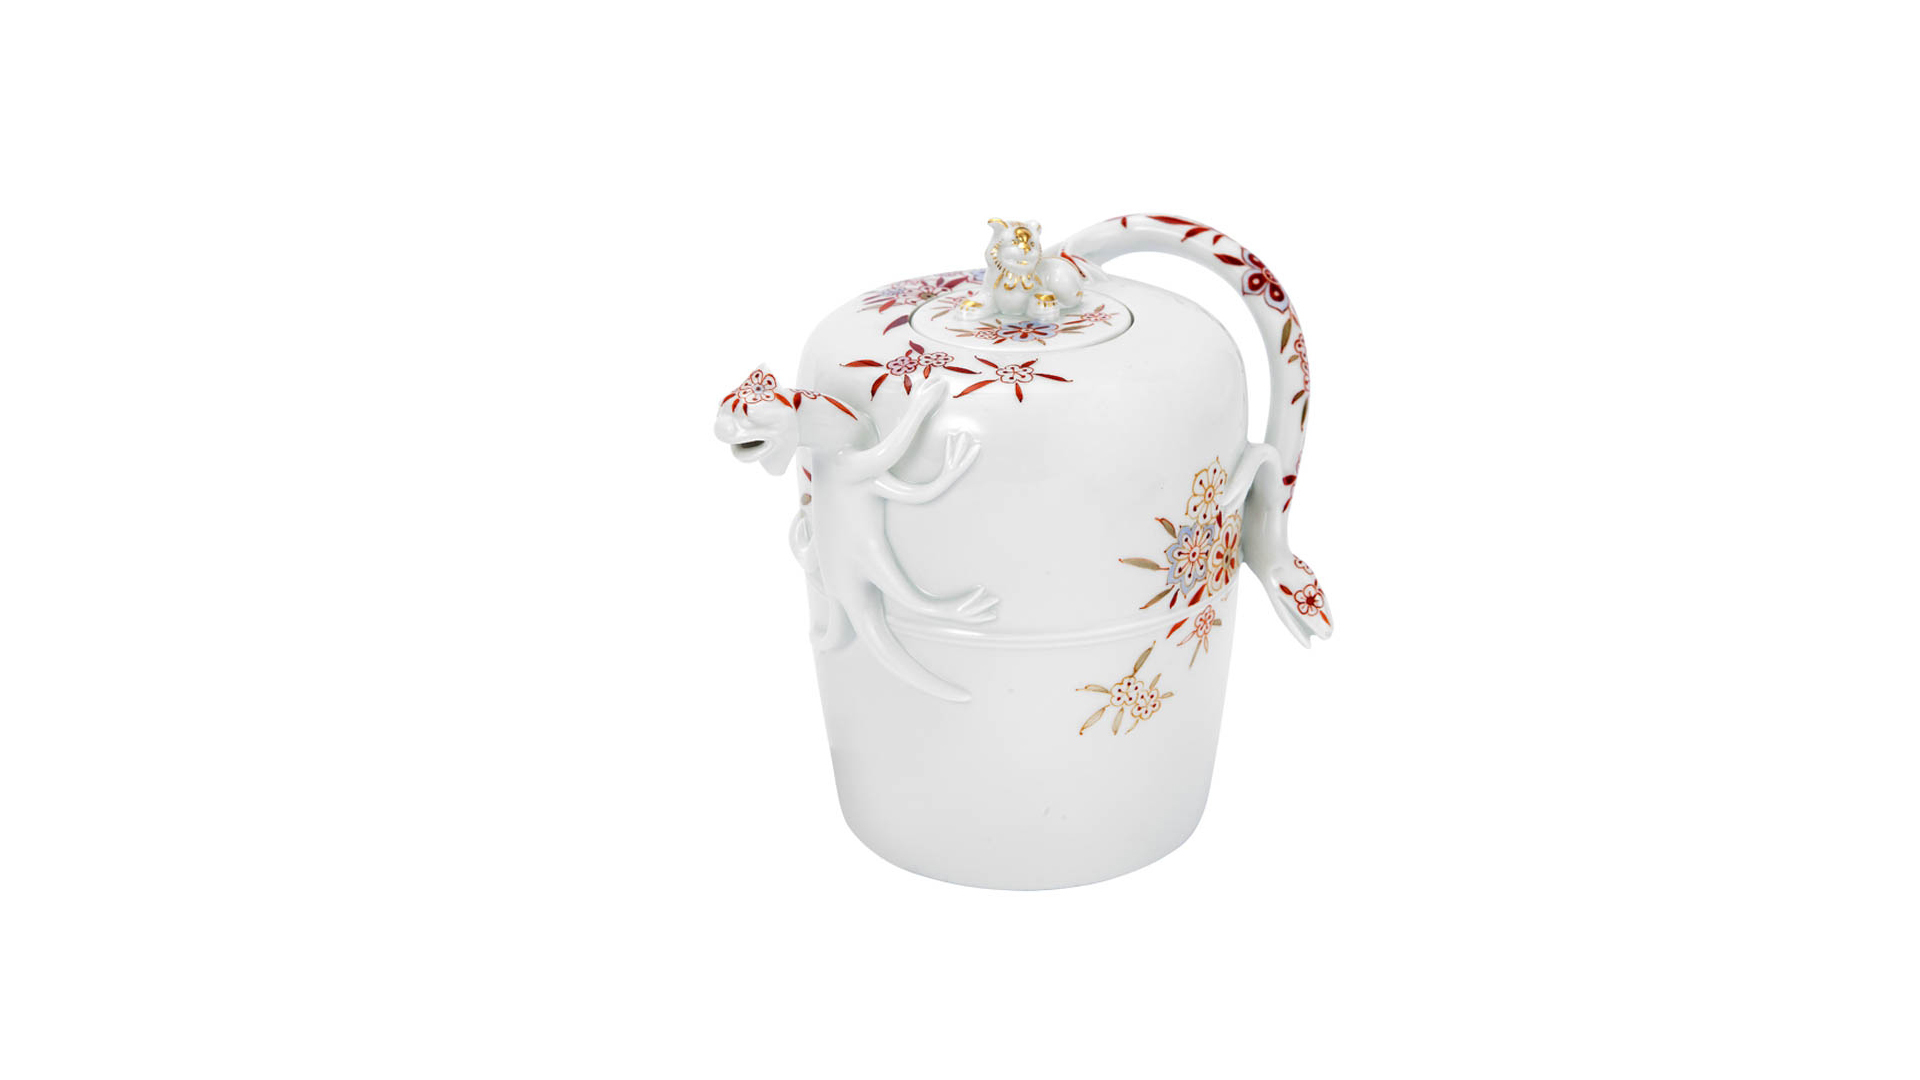 Чайник Meissen с ящерицей 0,4л Восточный цветочный узор (лим.вып.07/50, 2018) (модель 1712-1715гг)